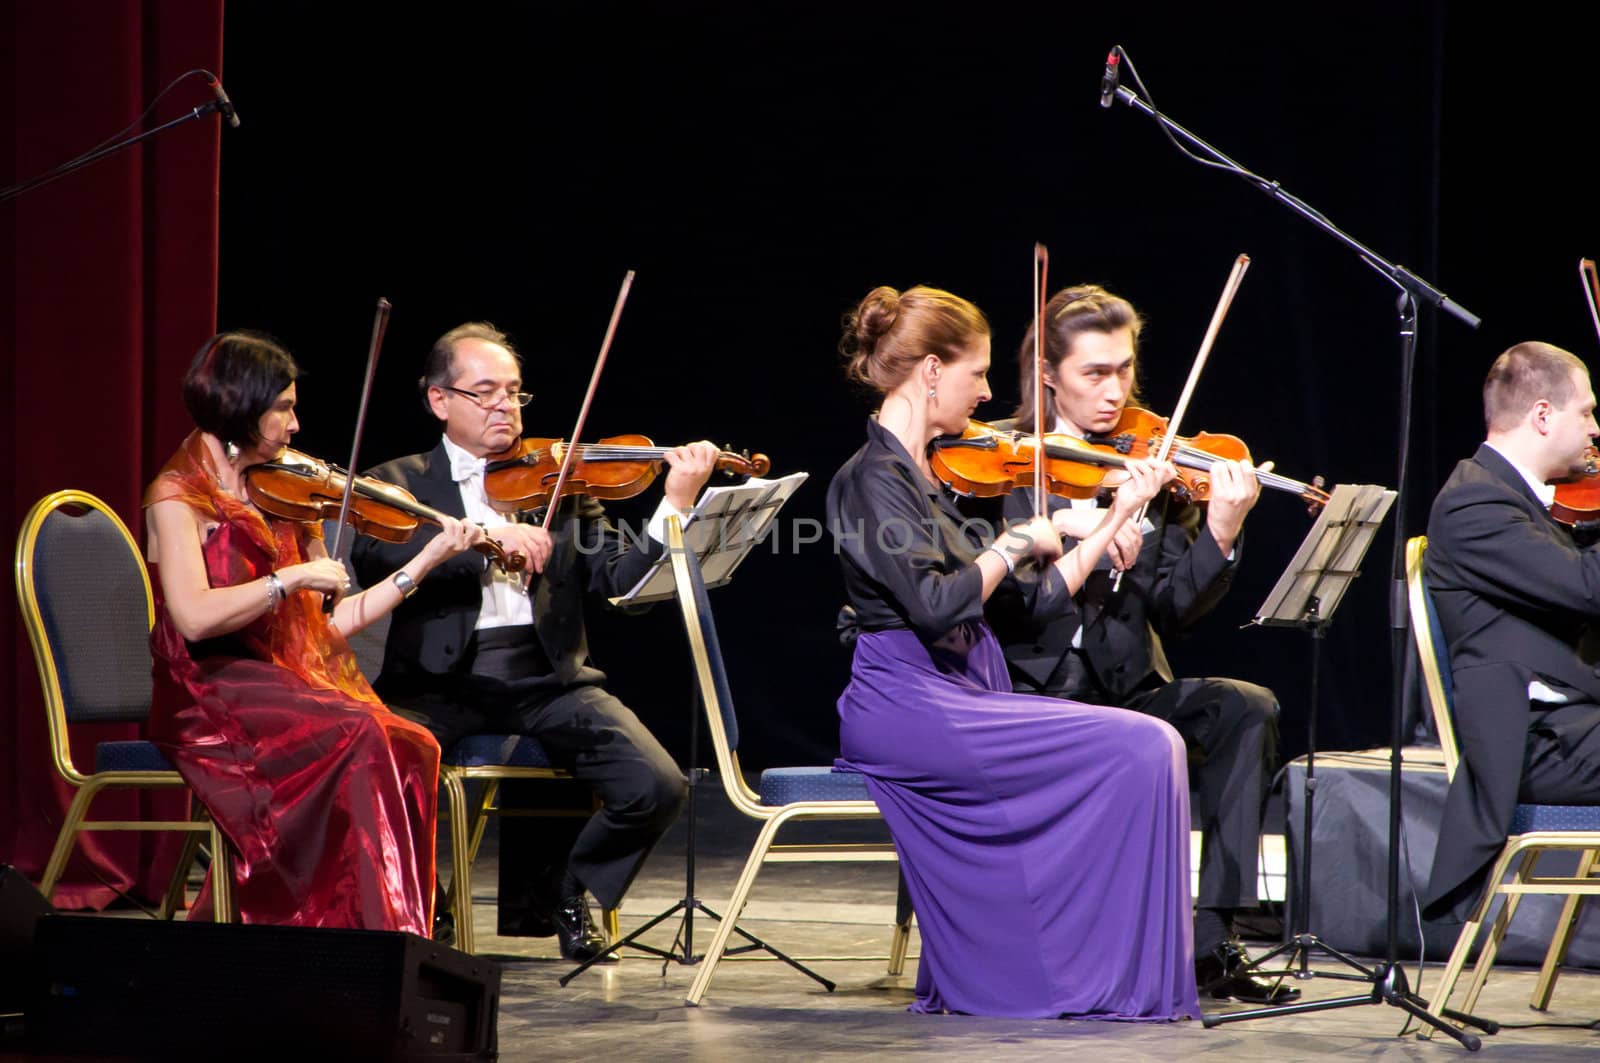 Violinists by nikolaydenisov